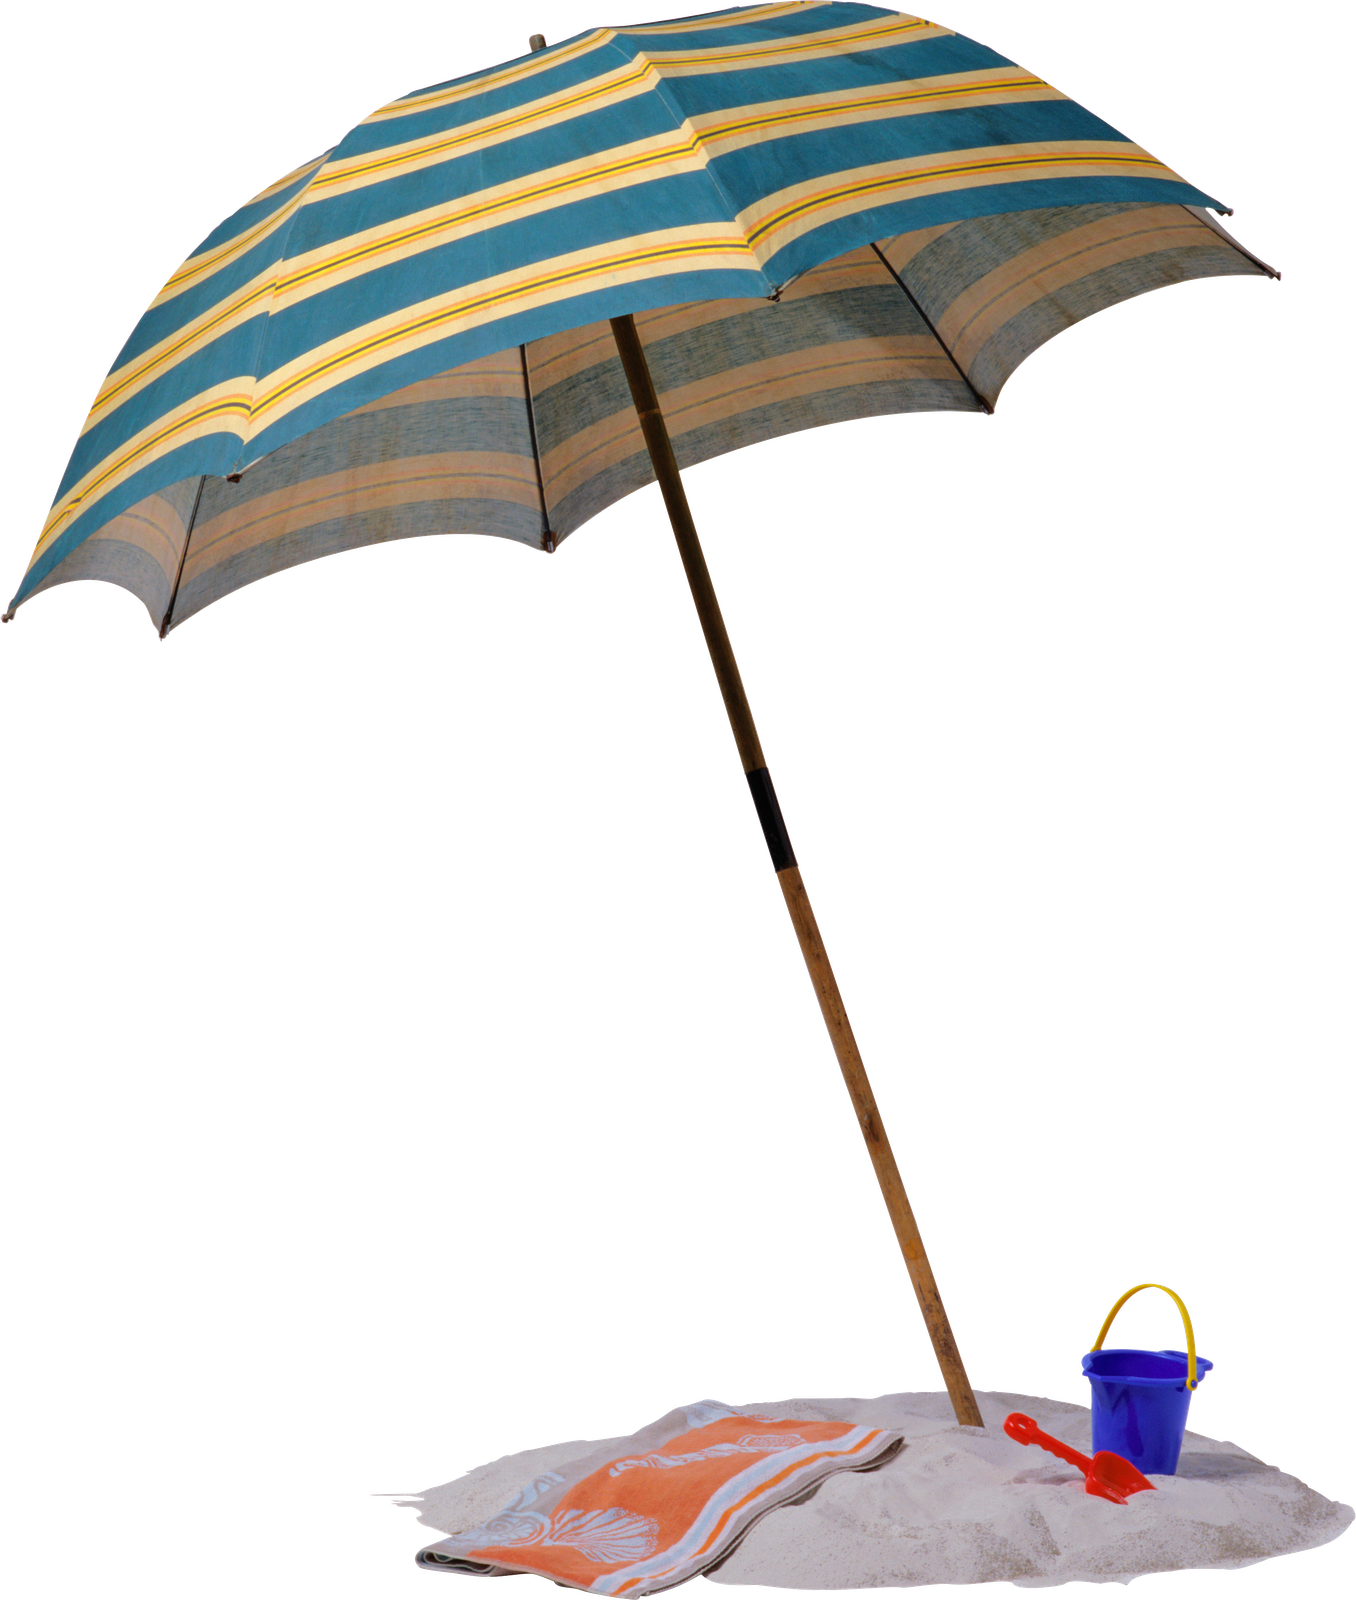 Пляжный зонтик. Пляжный зонт на прозрачном фоне. Зонт для пляжа. Летний зонтик. Морской зонтик